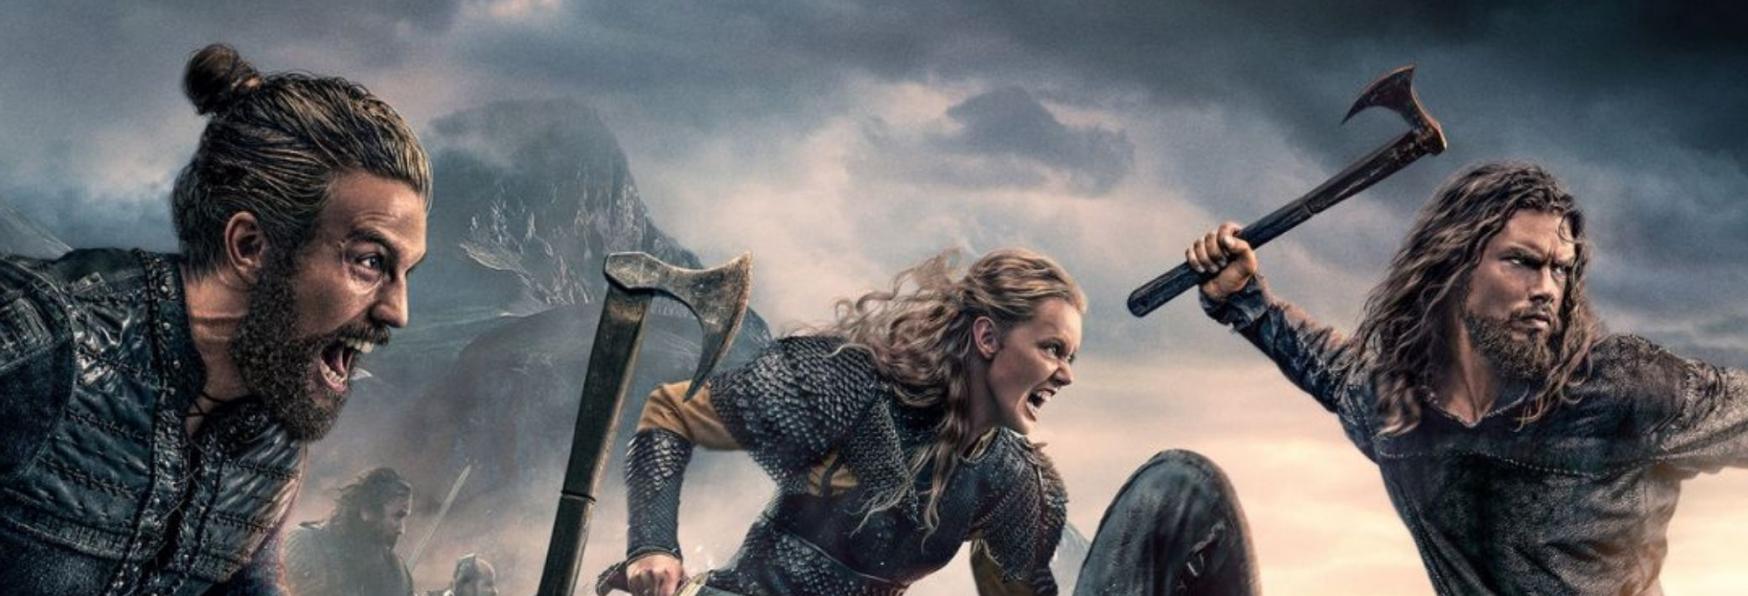 Vikings: Valhalla, appena Rilasciata su Netflix, ottiene un Punteggio del 100% su Rotten Tomatoes